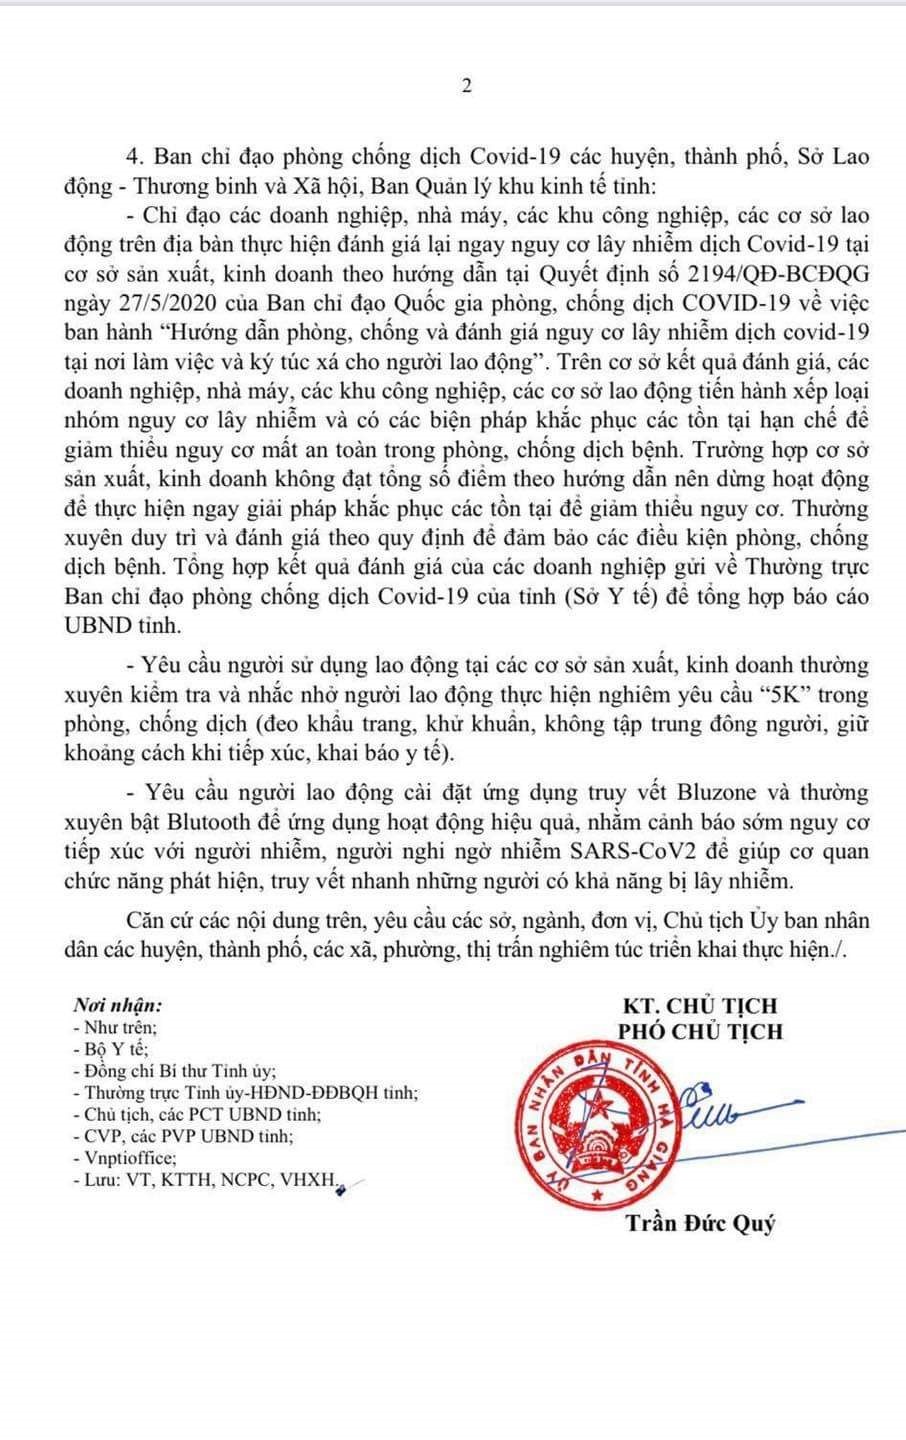 Chỉ đạo mới nhất của UBND tỉnh Hà Giang về việc khôi phục hoạt động các dịch vụ karaoke, Internet...